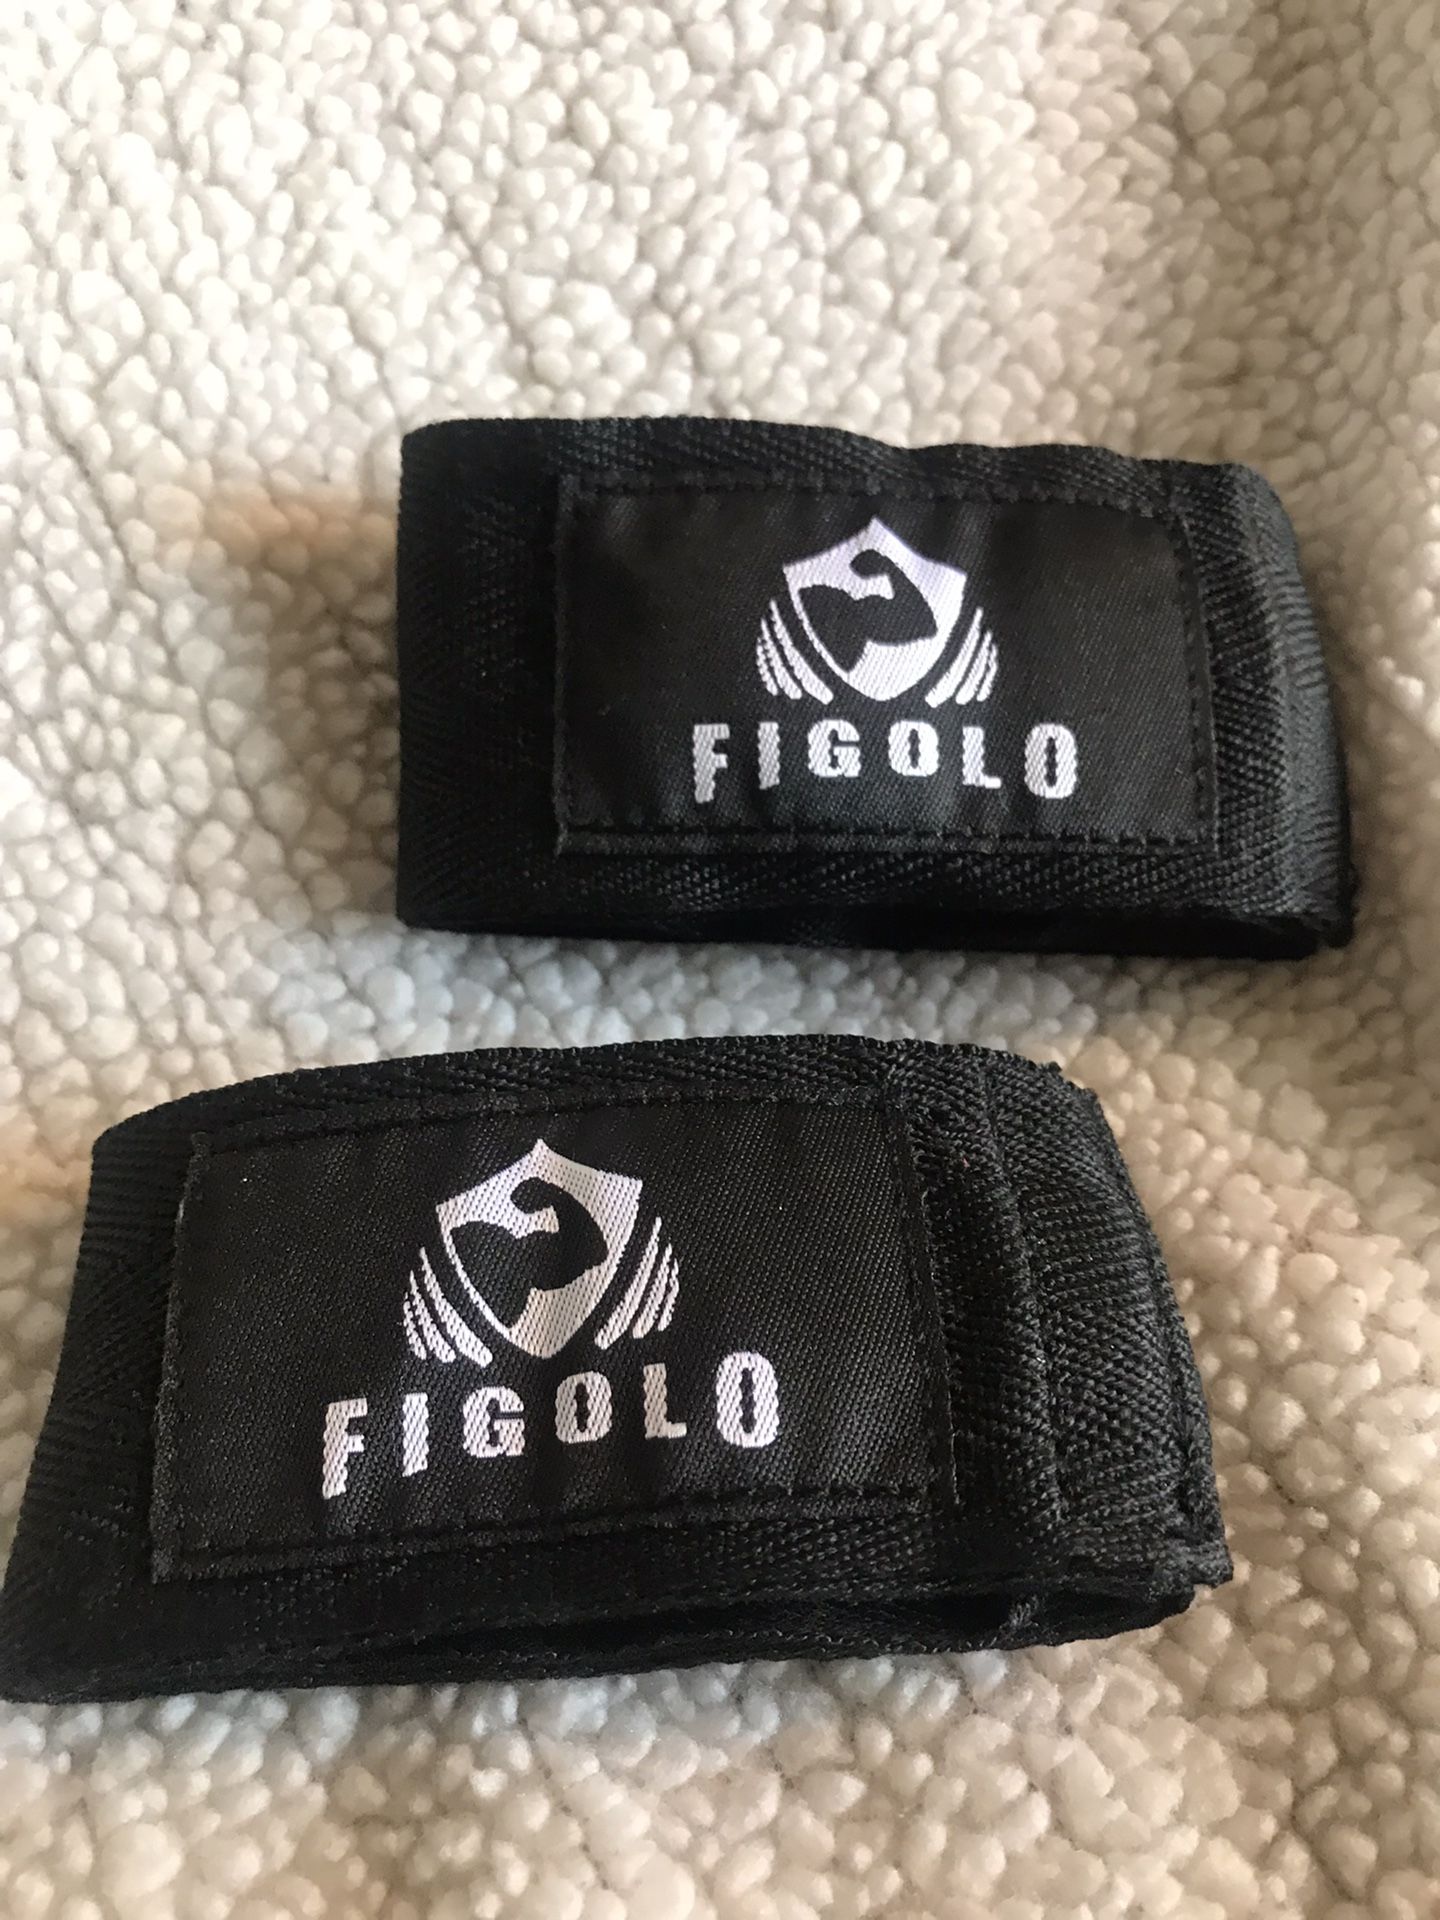 Figolo Hand Wraps, BLK 66” for Boxing, MMA